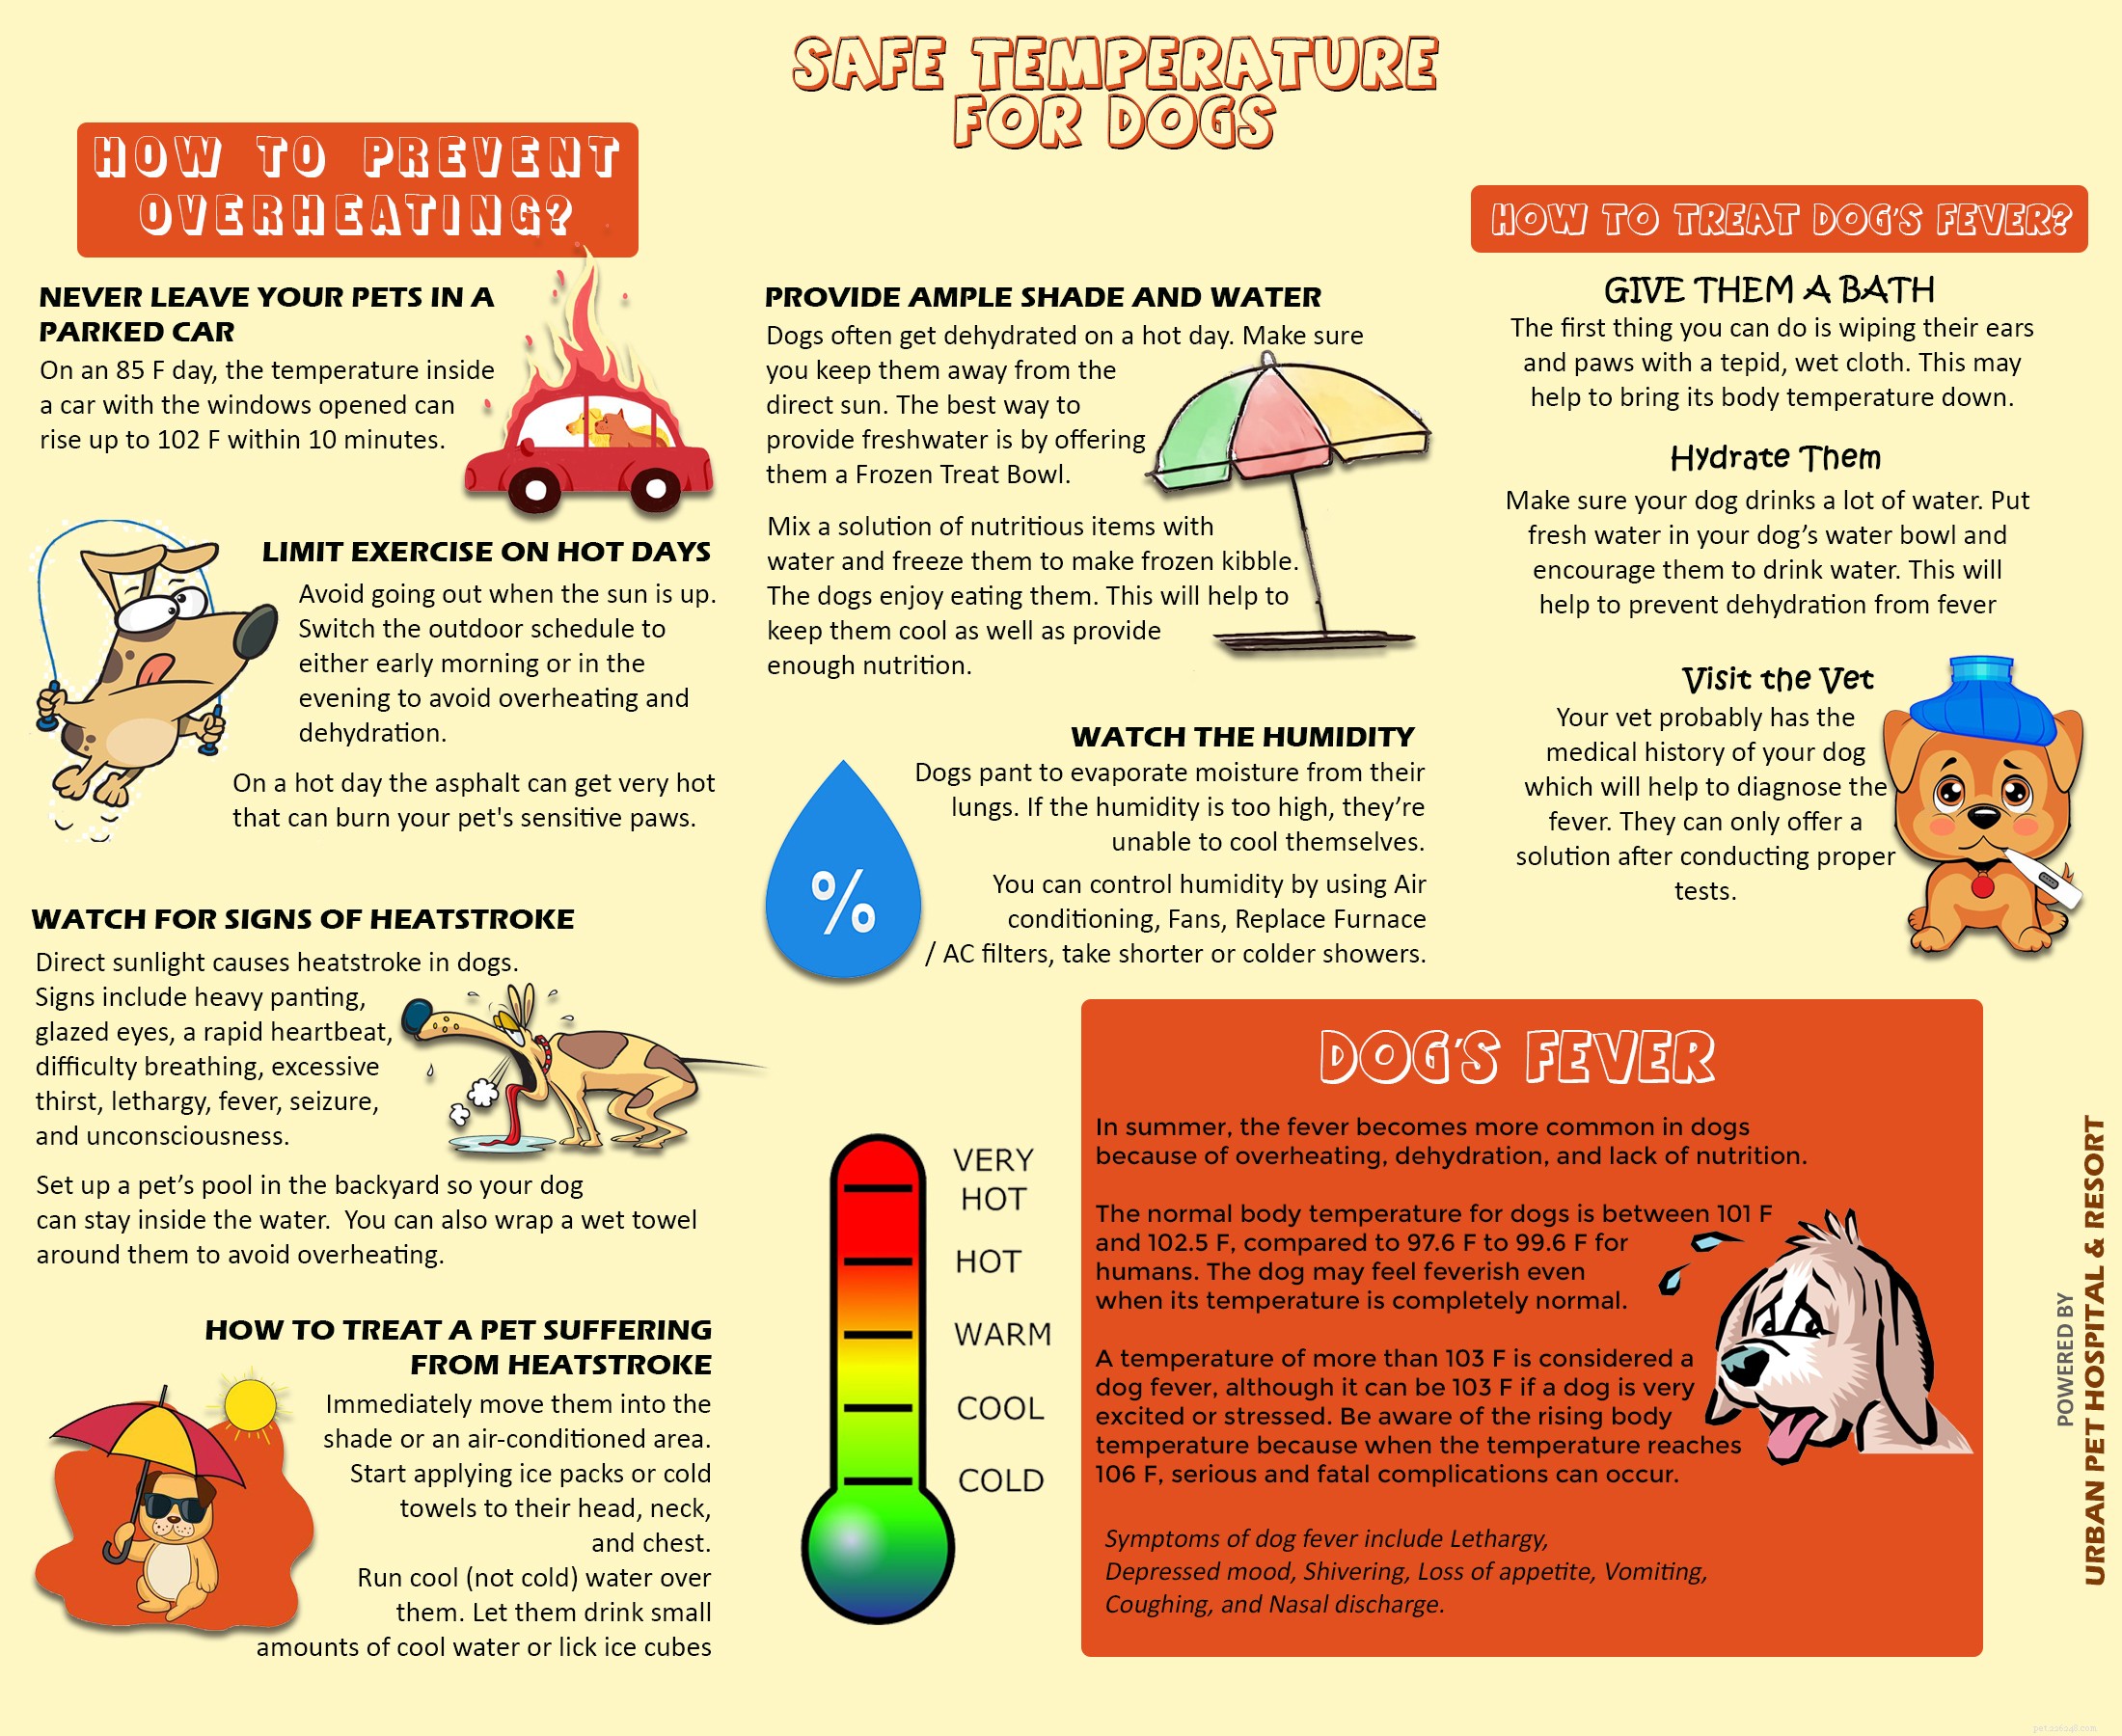 개를 위한 안전한 온도:과열을 방지하는 방법은 무엇입니까?